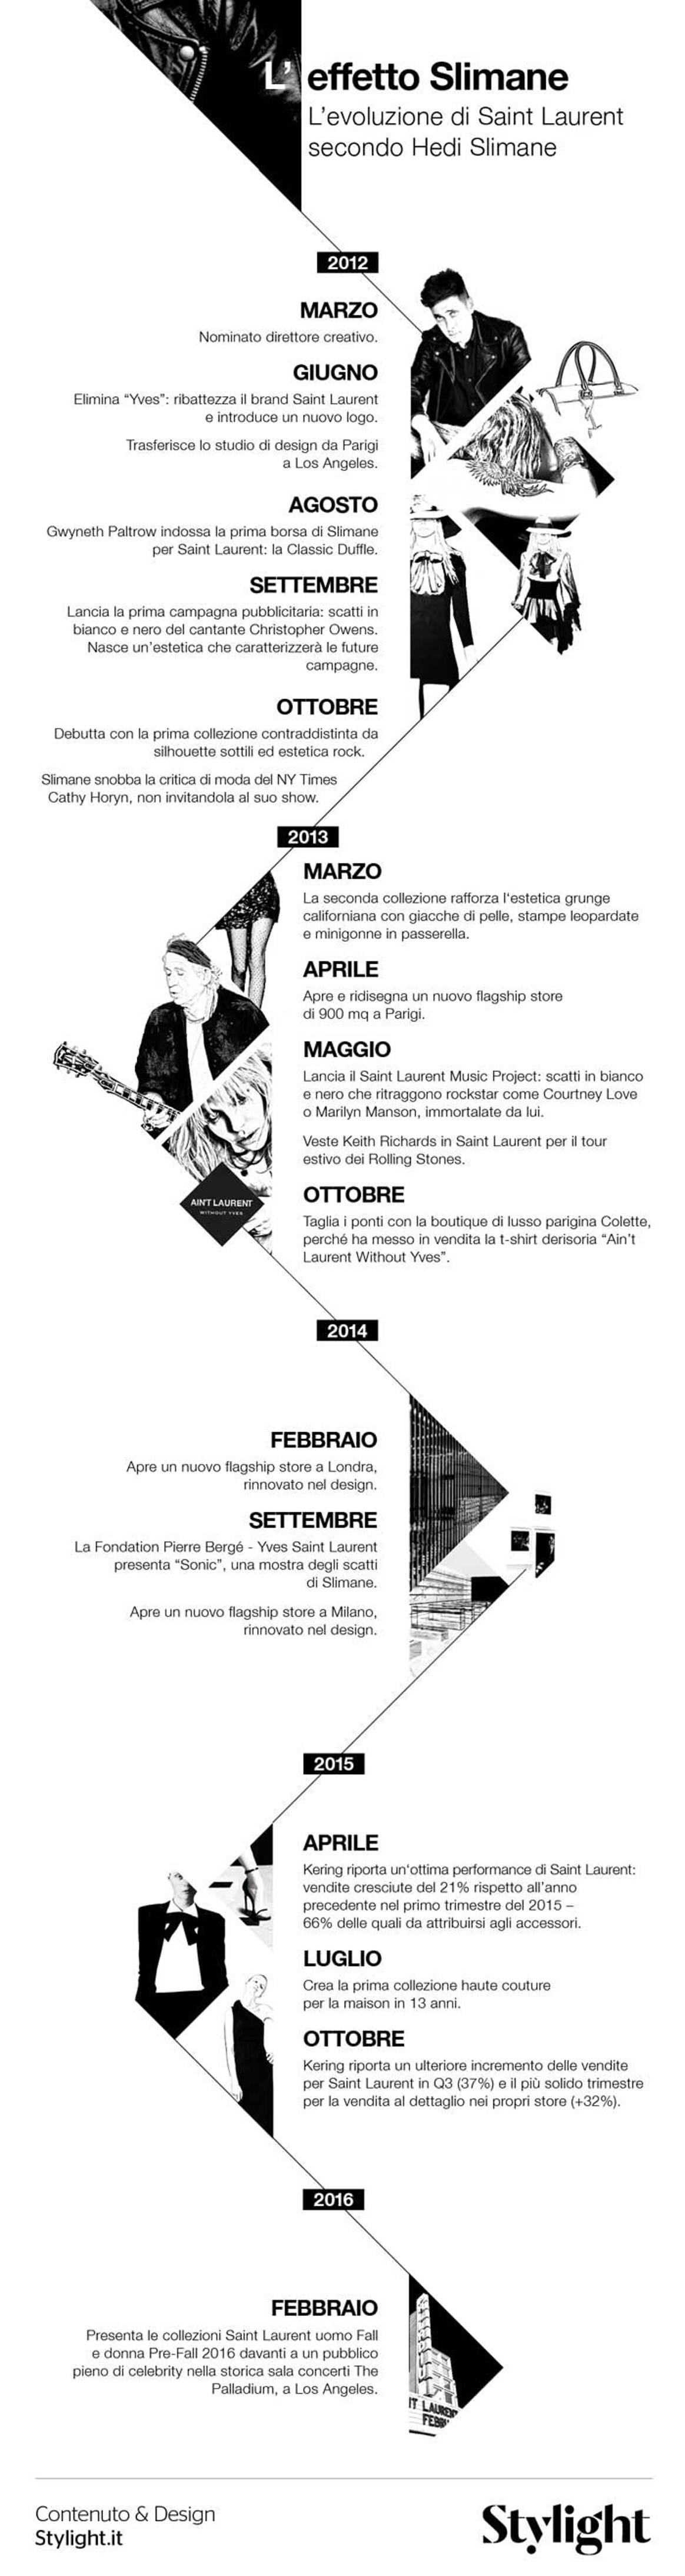 Infographic - Hedi Slimane e Saint Laurent: come si crea una storia di successo